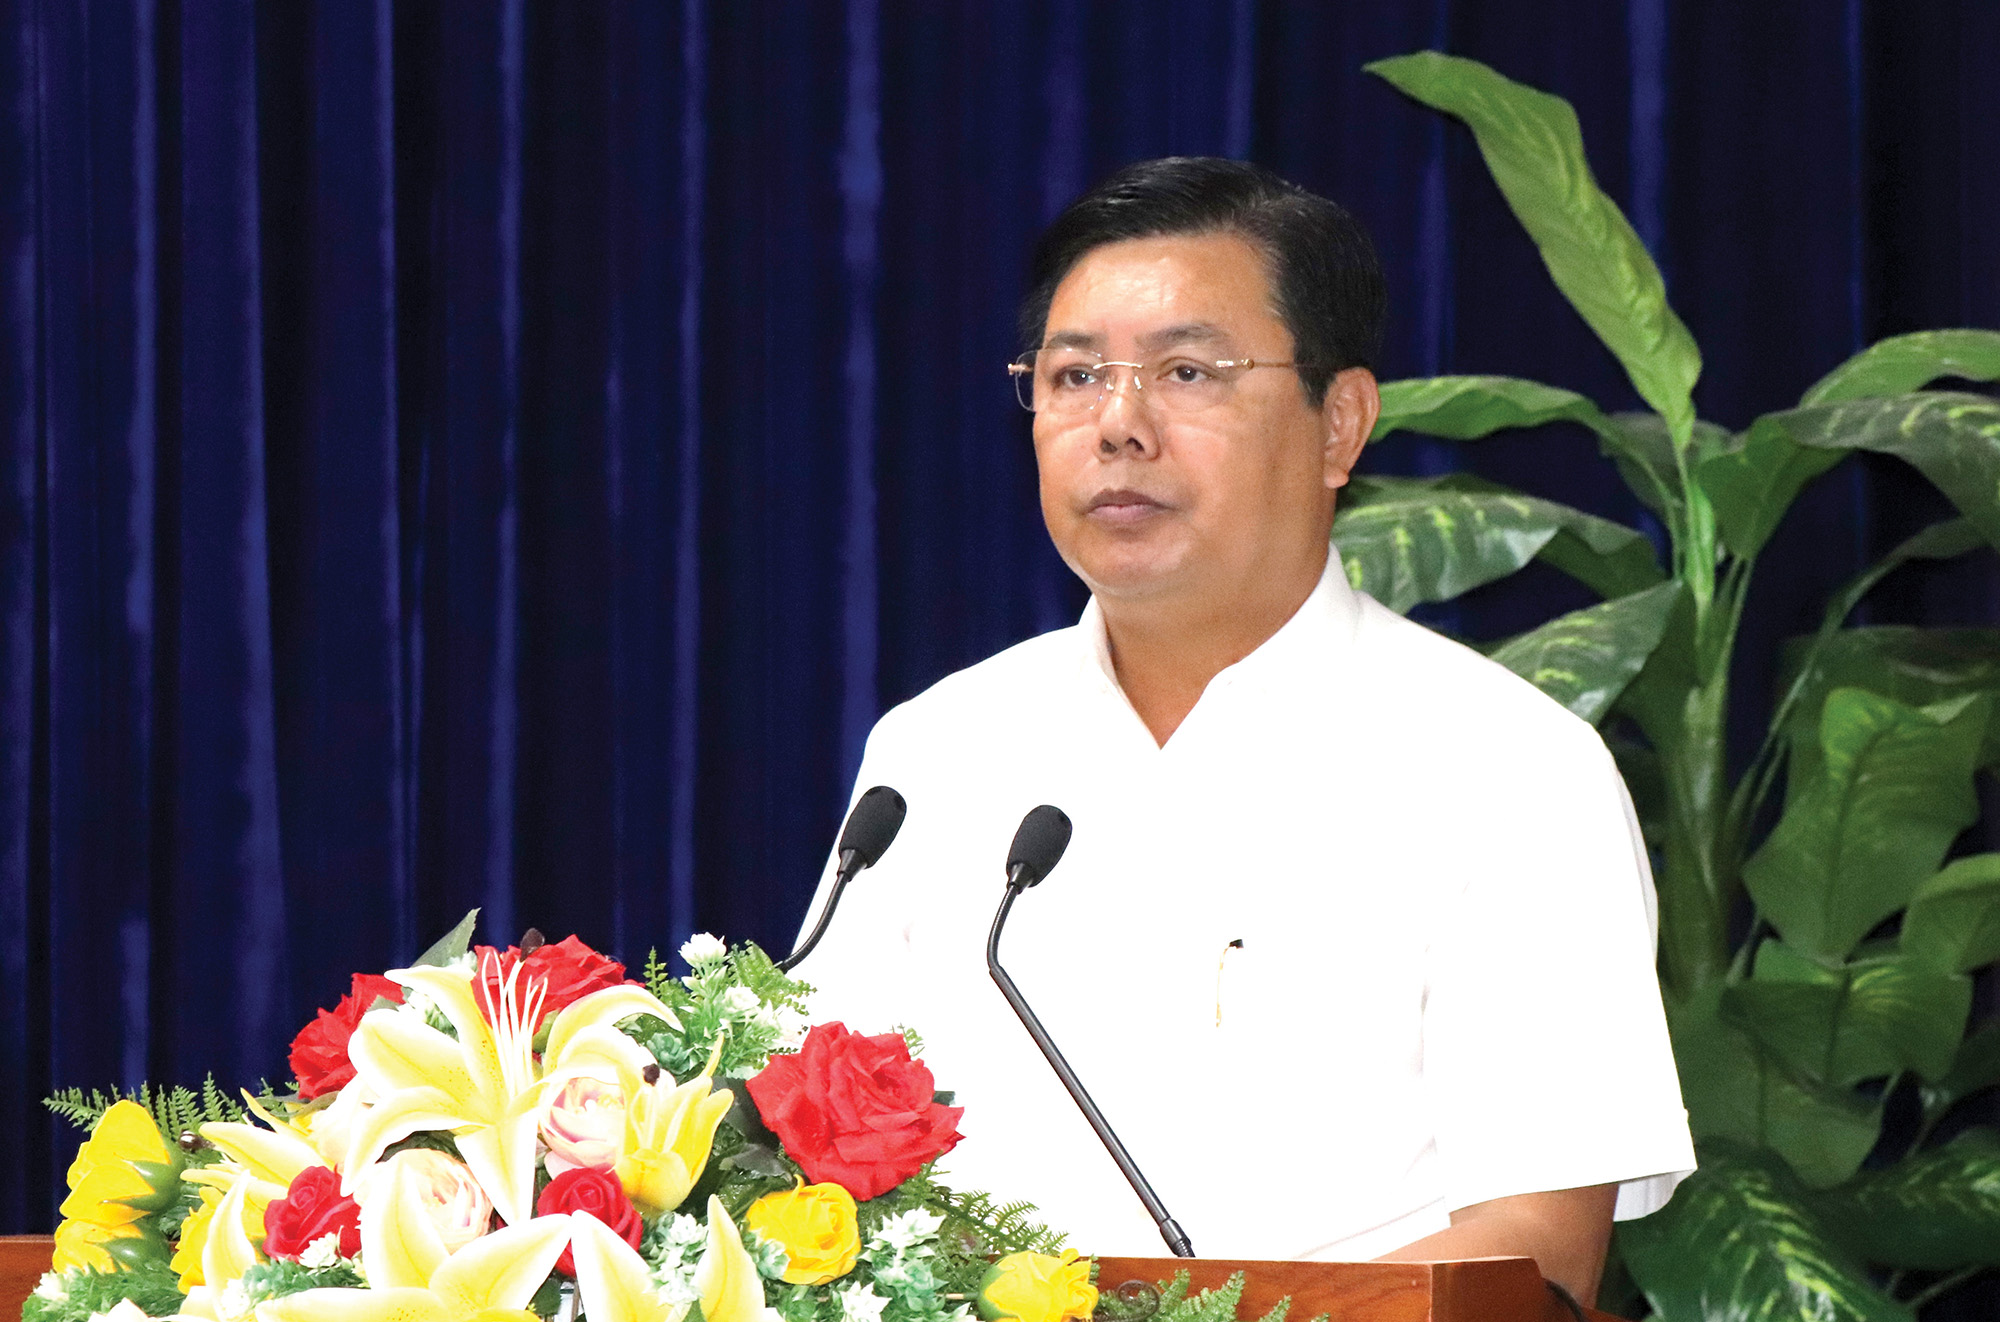 Đồng chí Nguyễn Tiến Hải - Ủy viên Trung ương Đảng, Bí thư Tỉnh ủy, Chủ tịch HĐND tỉnh Cà Mau tại Hội nghị sơ kết công tác 6 tháng đầu năm, xây dựng phương hướng nhiệm vụ 6 tháng cuối năm 2023.